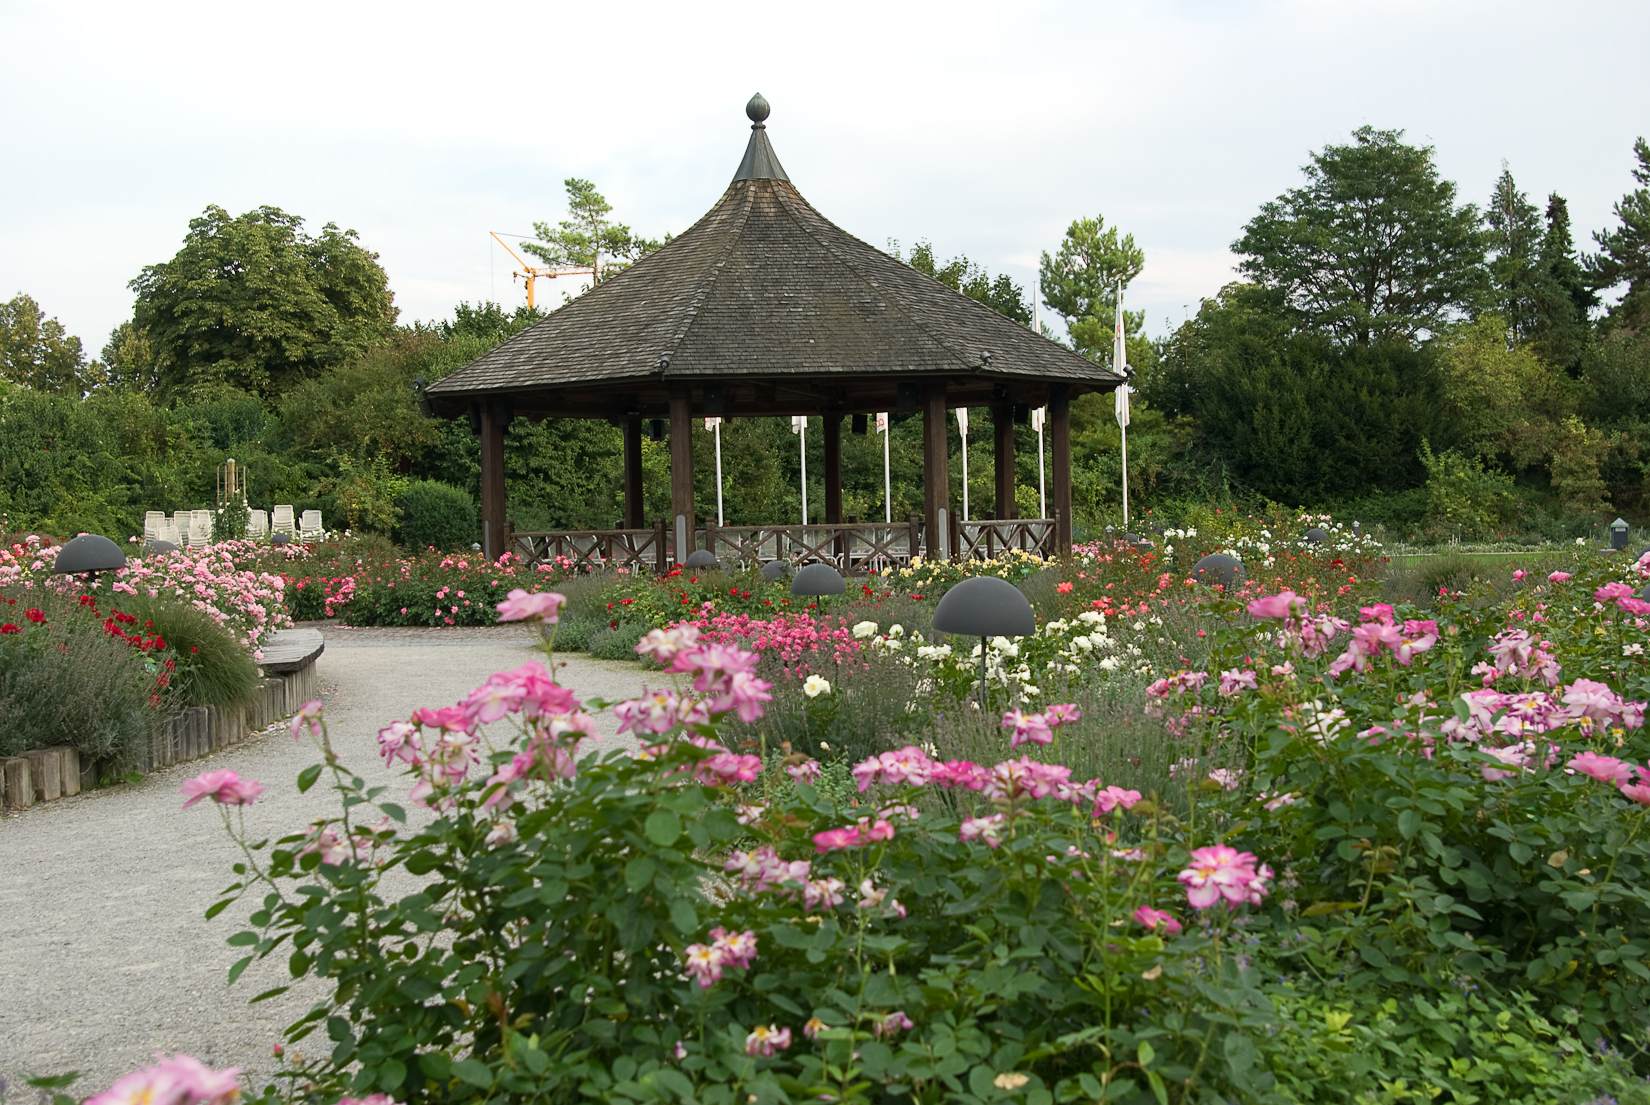 Botanischer Garten Augsburg Programm 2020 / Botanischer Garten